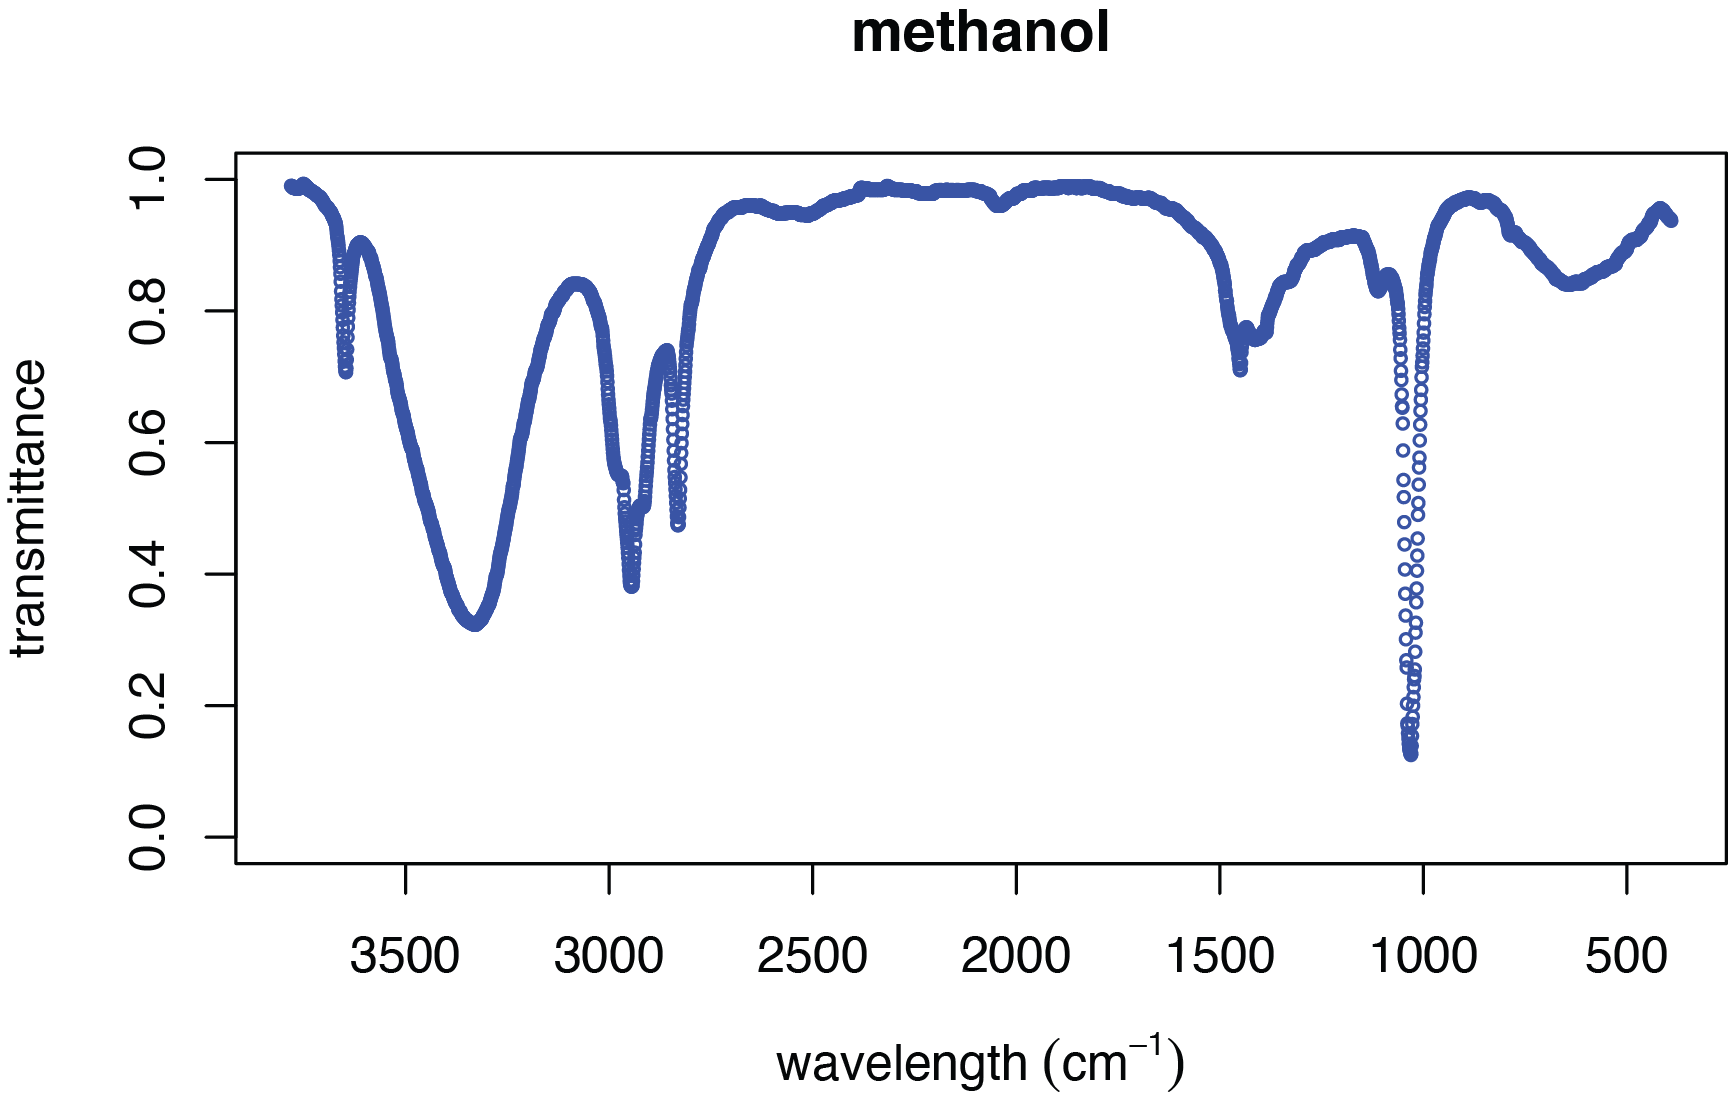 Espectro IR de metanol mostrado como datos digitalizados.